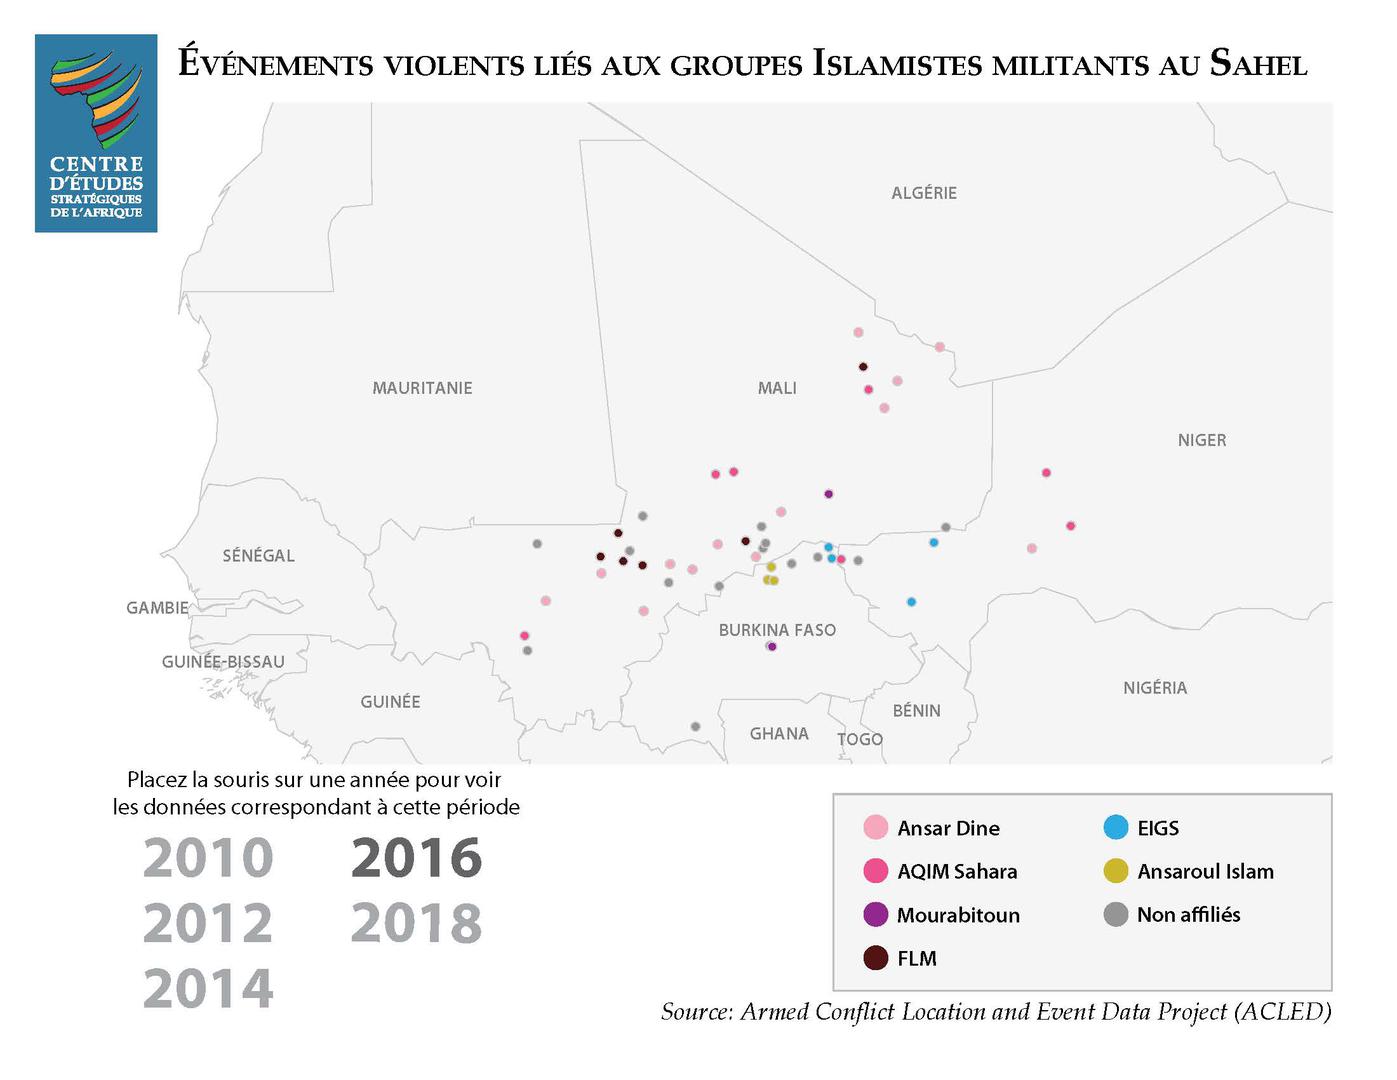 La violence au Sahel a considérablement augmenté entre 2016 et 2018, en raison de l'intensification des activités et de la présence de groupes islamistes armés. © 2019 Centre d’etudes stratégiques de l’Afrique. 